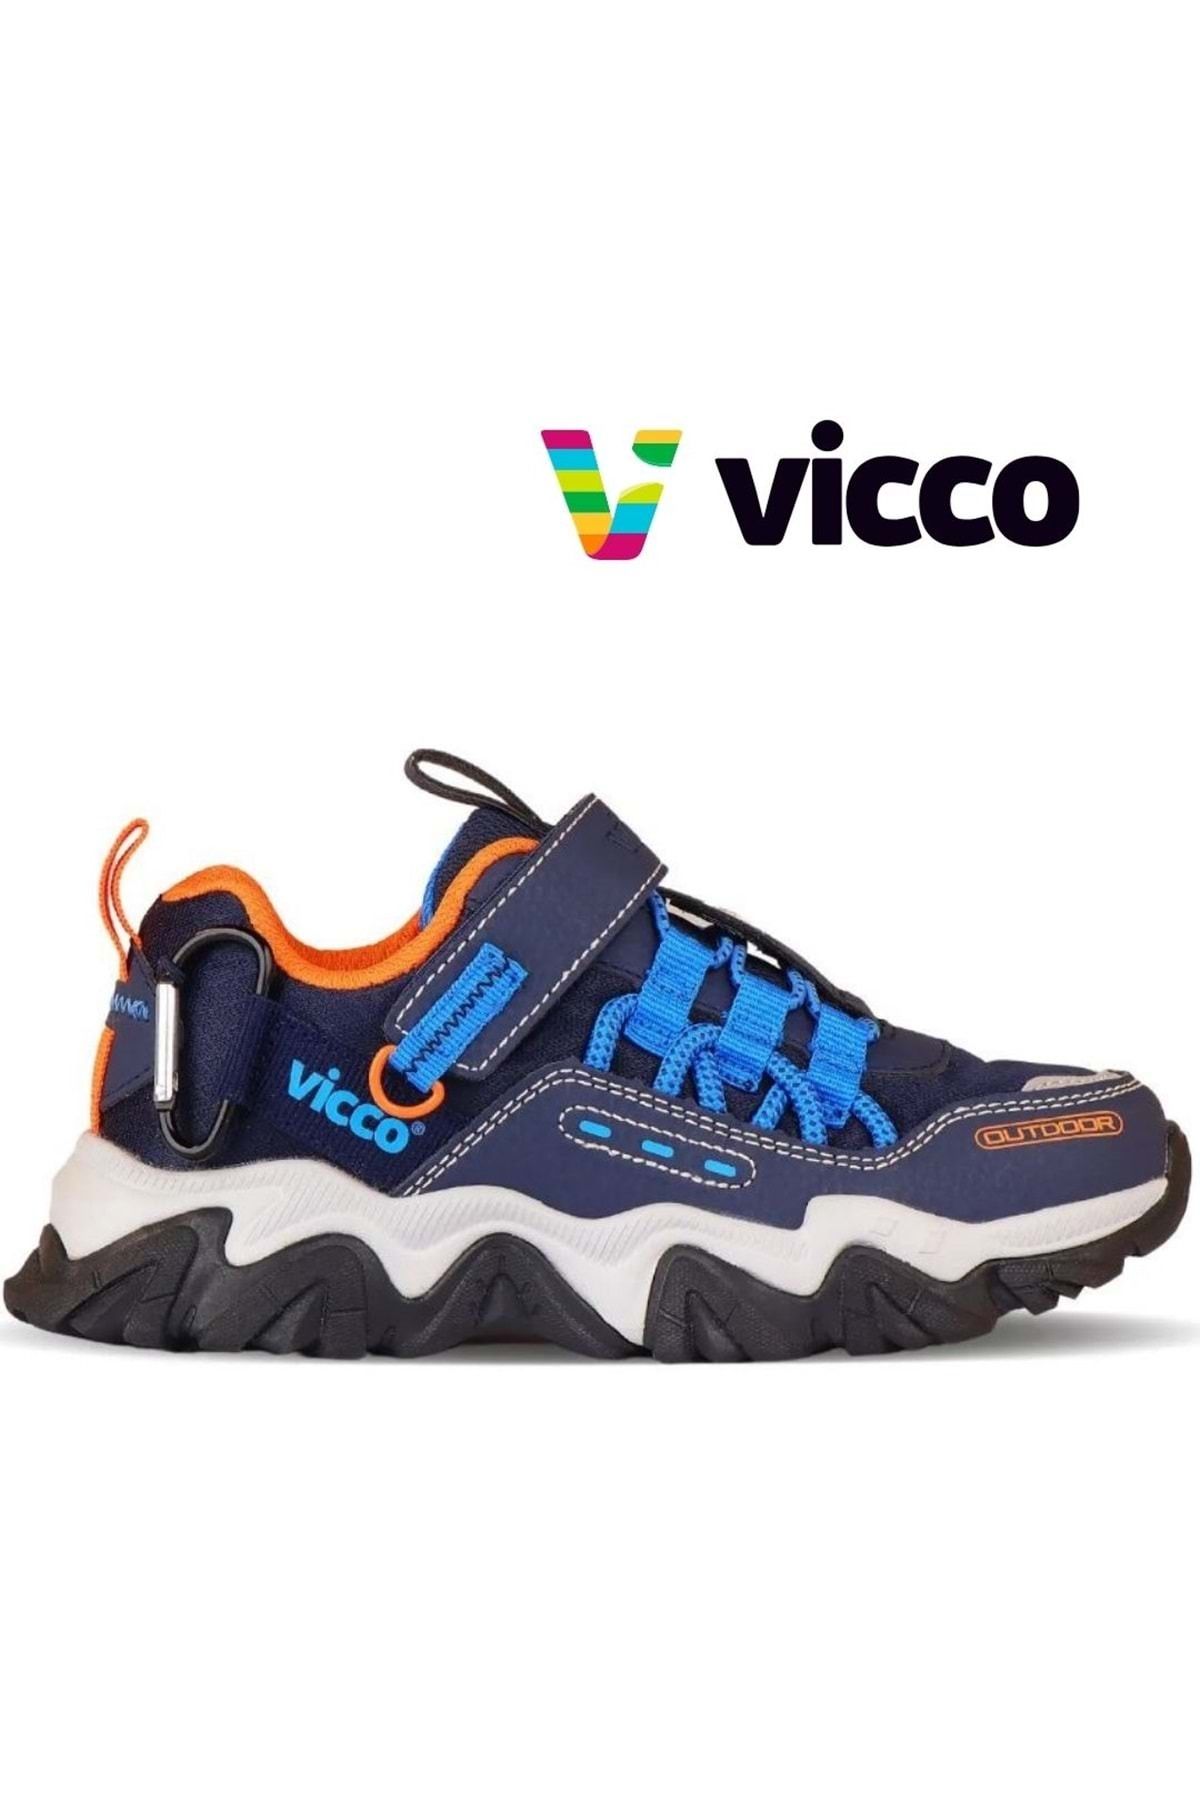 Vicco Toro Trekking Outdoor Ortopedik Çocuk Spor Ayakkabı Lacivert